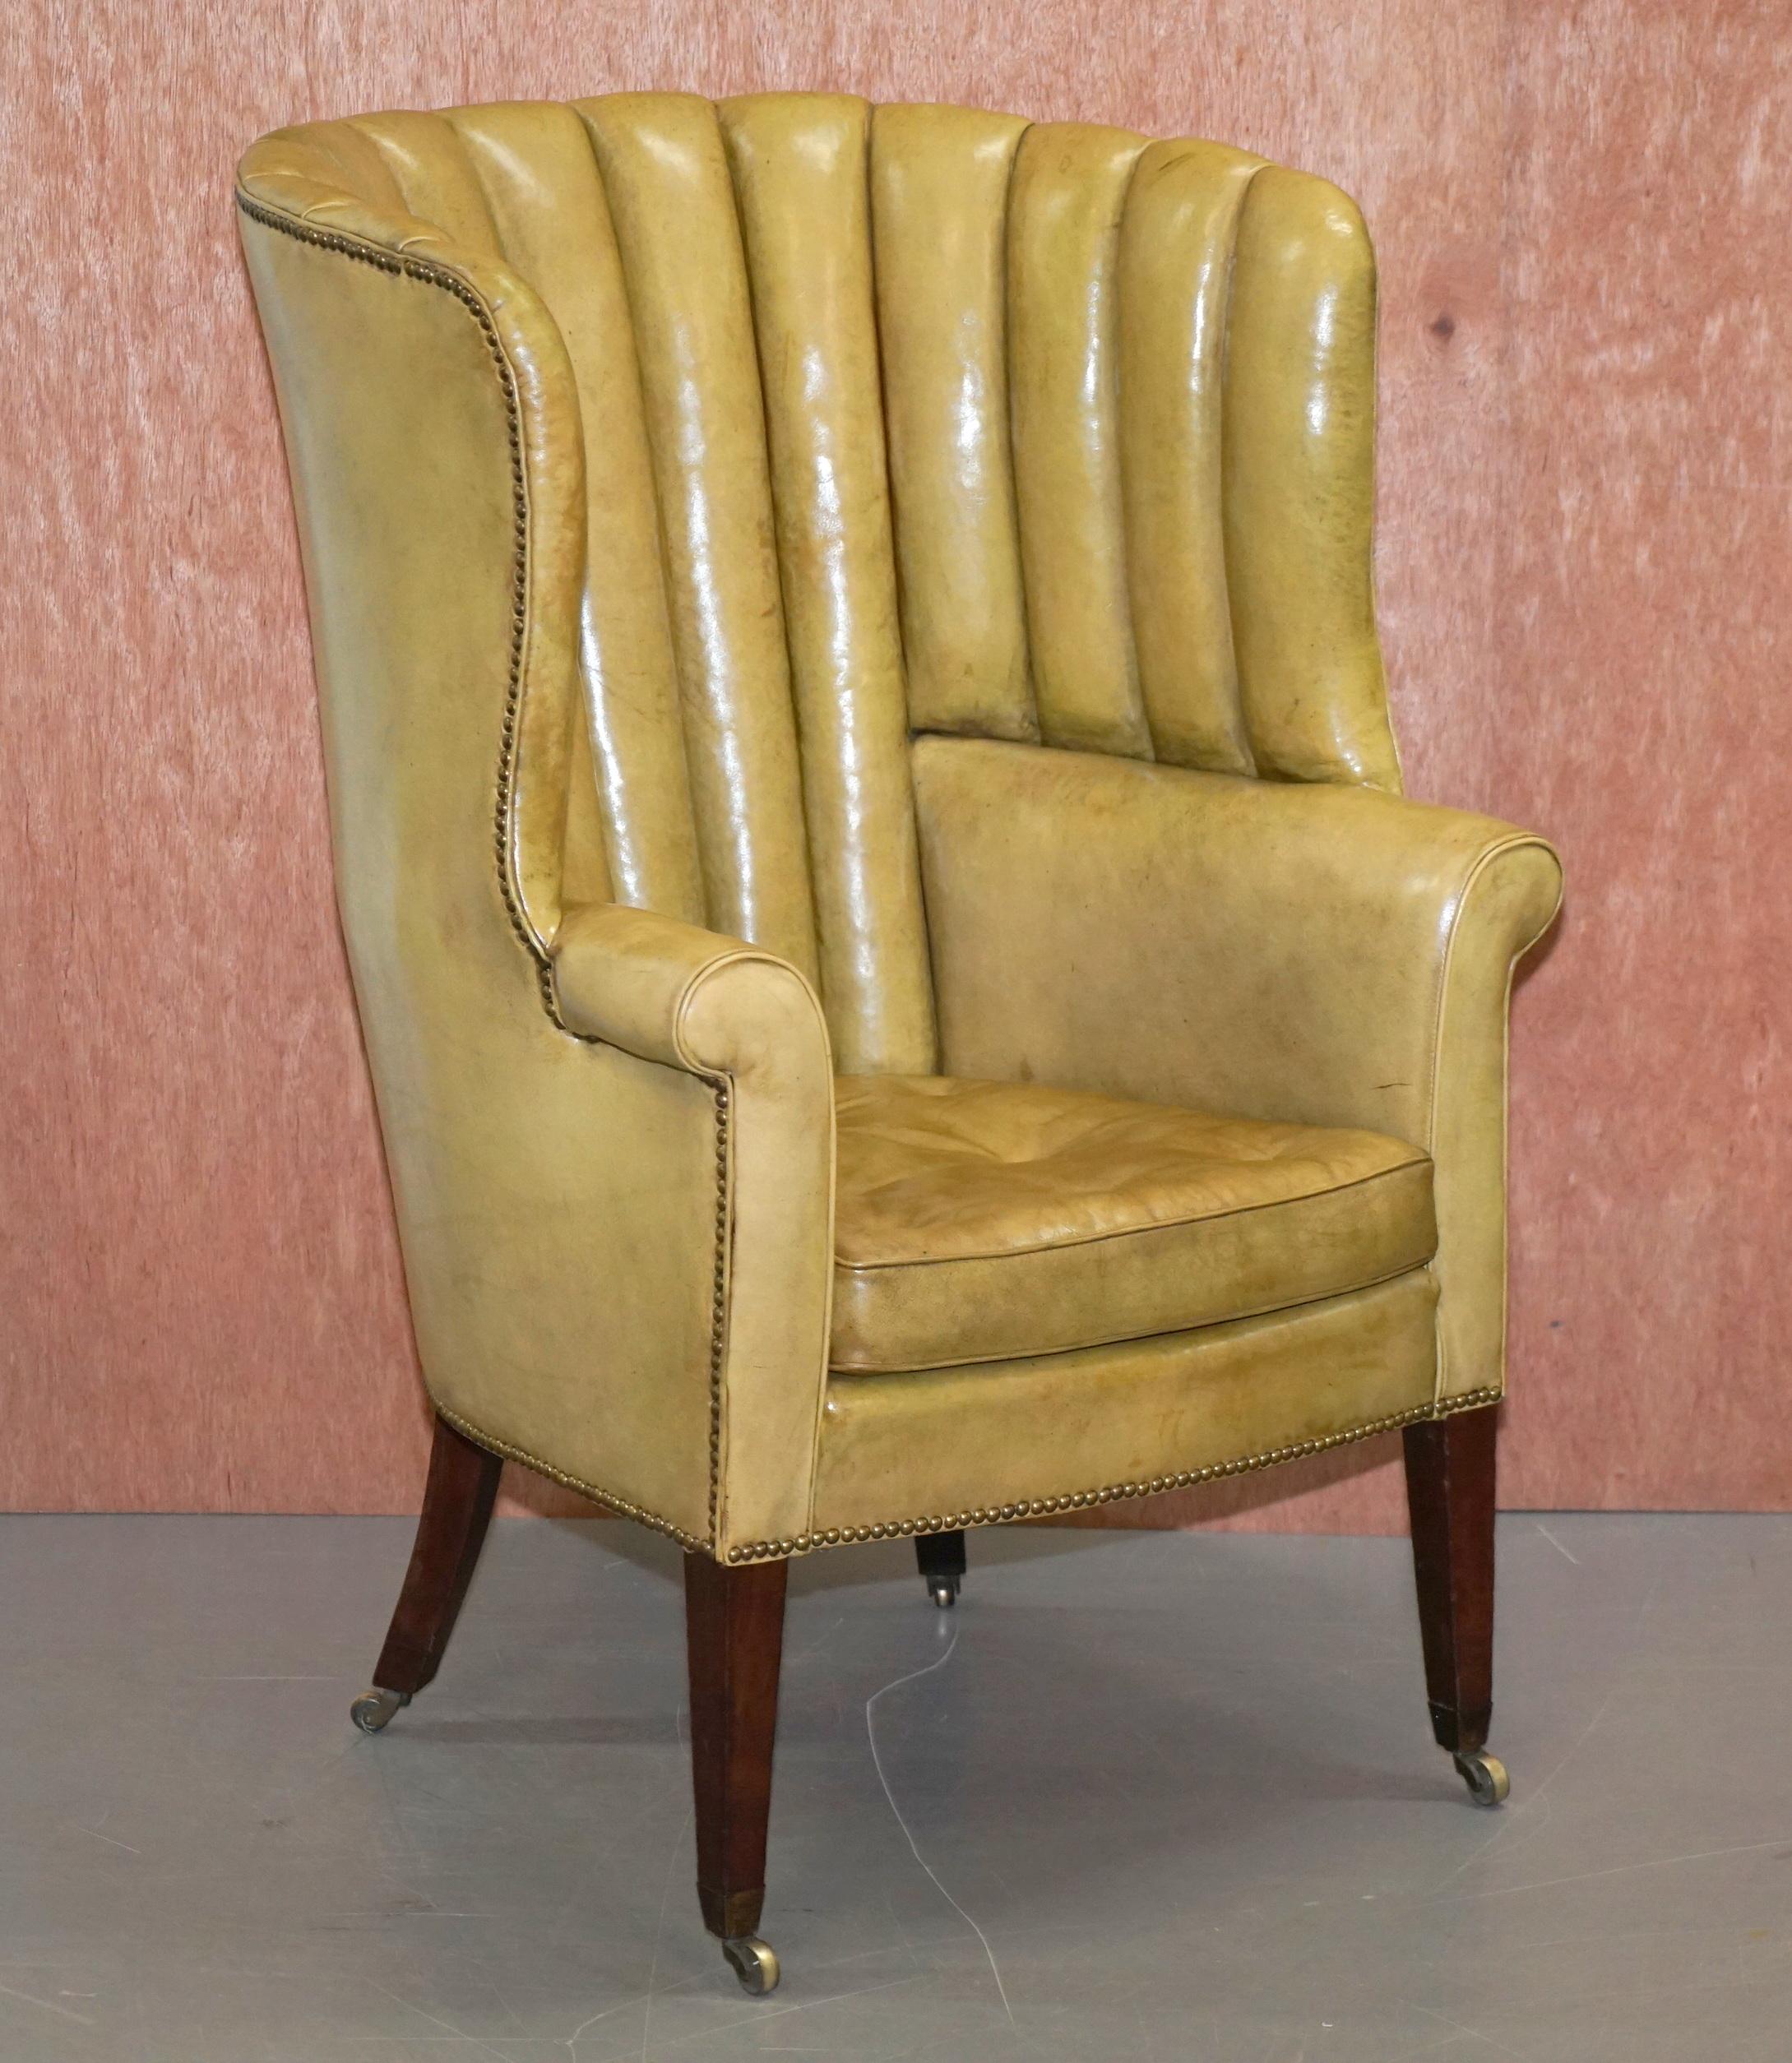 Nous sommes ravis d'offrir à la vente ce très rare fauteuil Regency teinté à la main vers 1815 avec dossier en tonneau cannelé et pouf assorti.

Une paire charmante et de la meilleure qualité que j'aie jamais vue. Les cadres sont en acajou, le